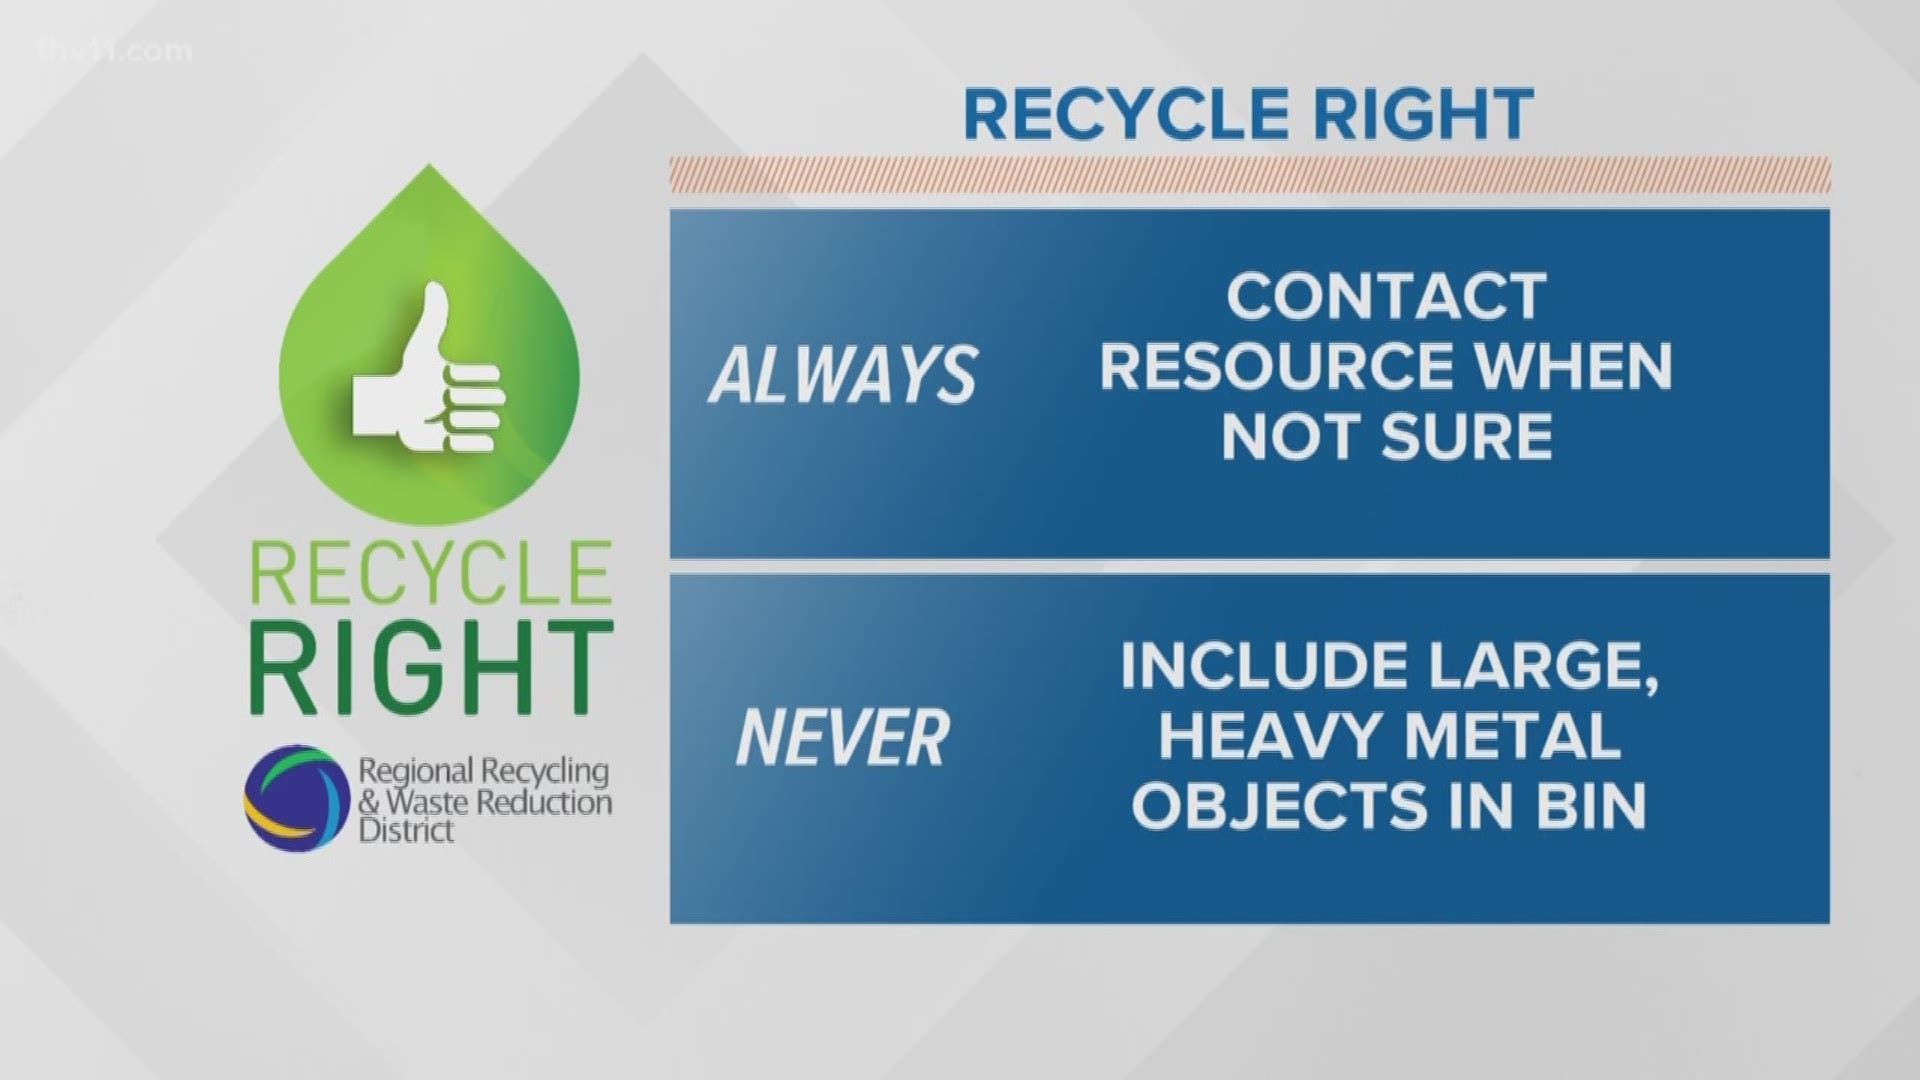 Meteorologist Mariel Ruiz has your Recycle Right tips for week ten.